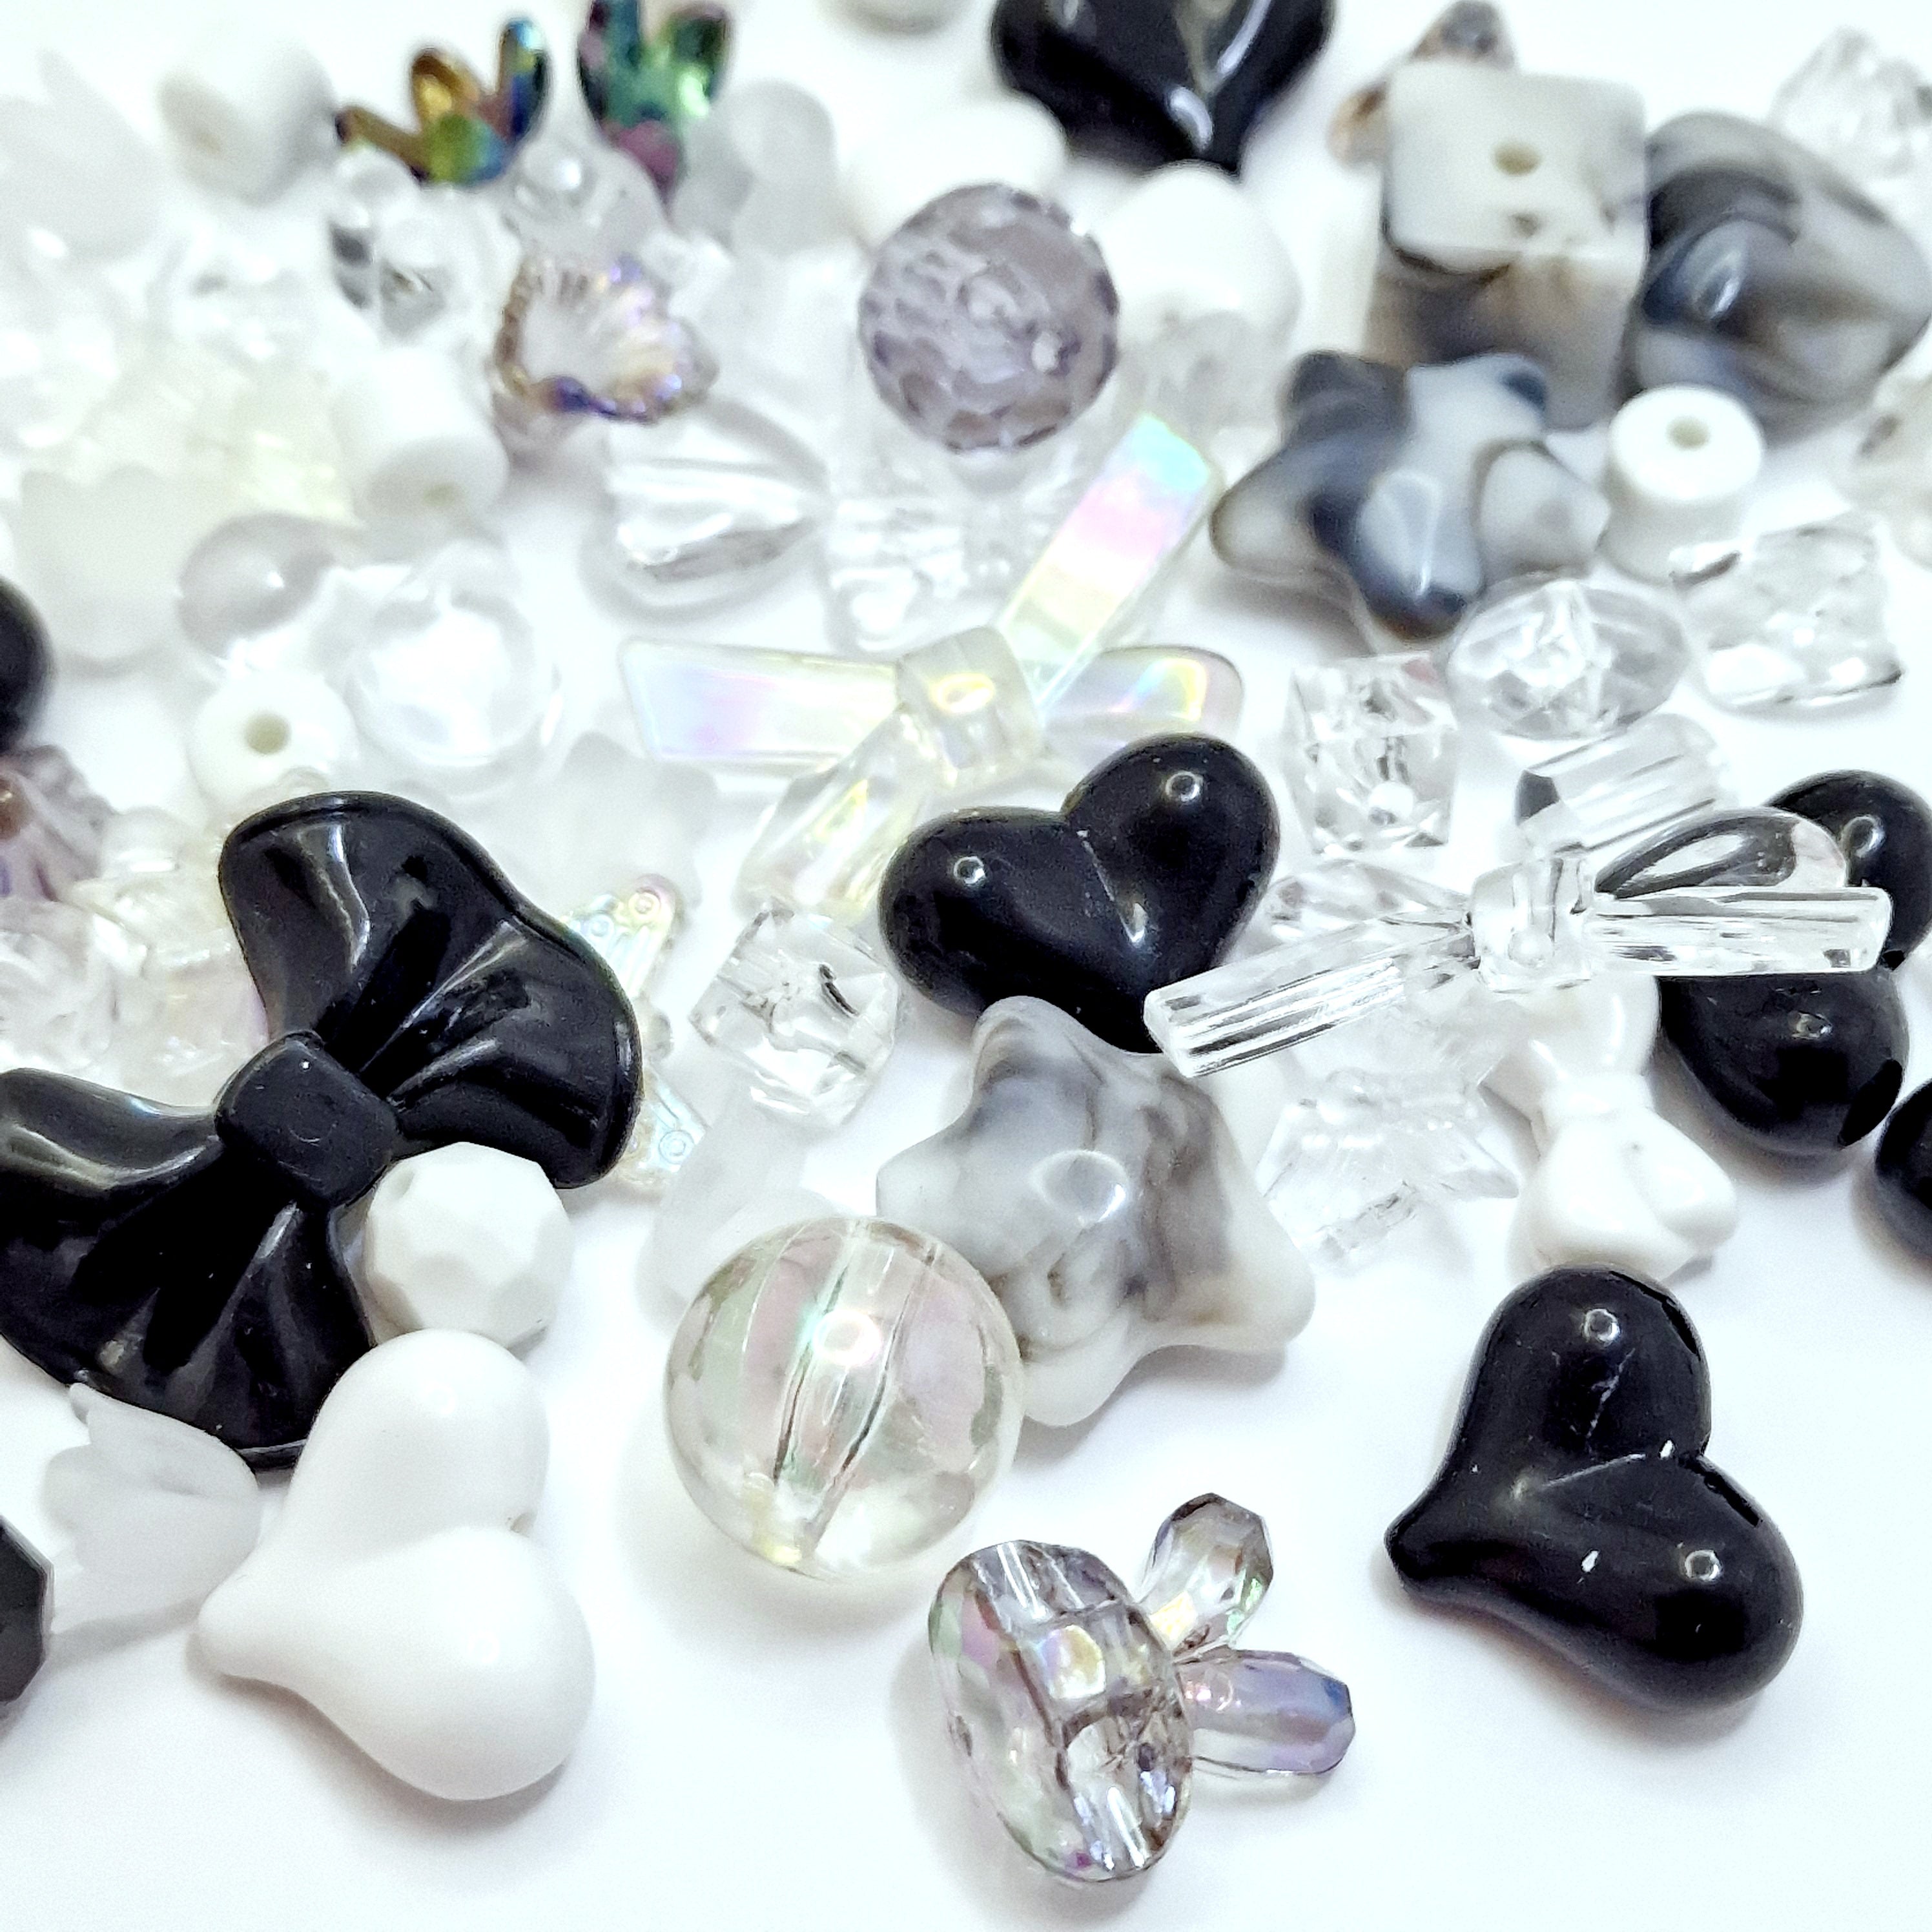 MajorCrafts 50g Black & White Theme Mixed Shapes & Sizes Acrylic Beads